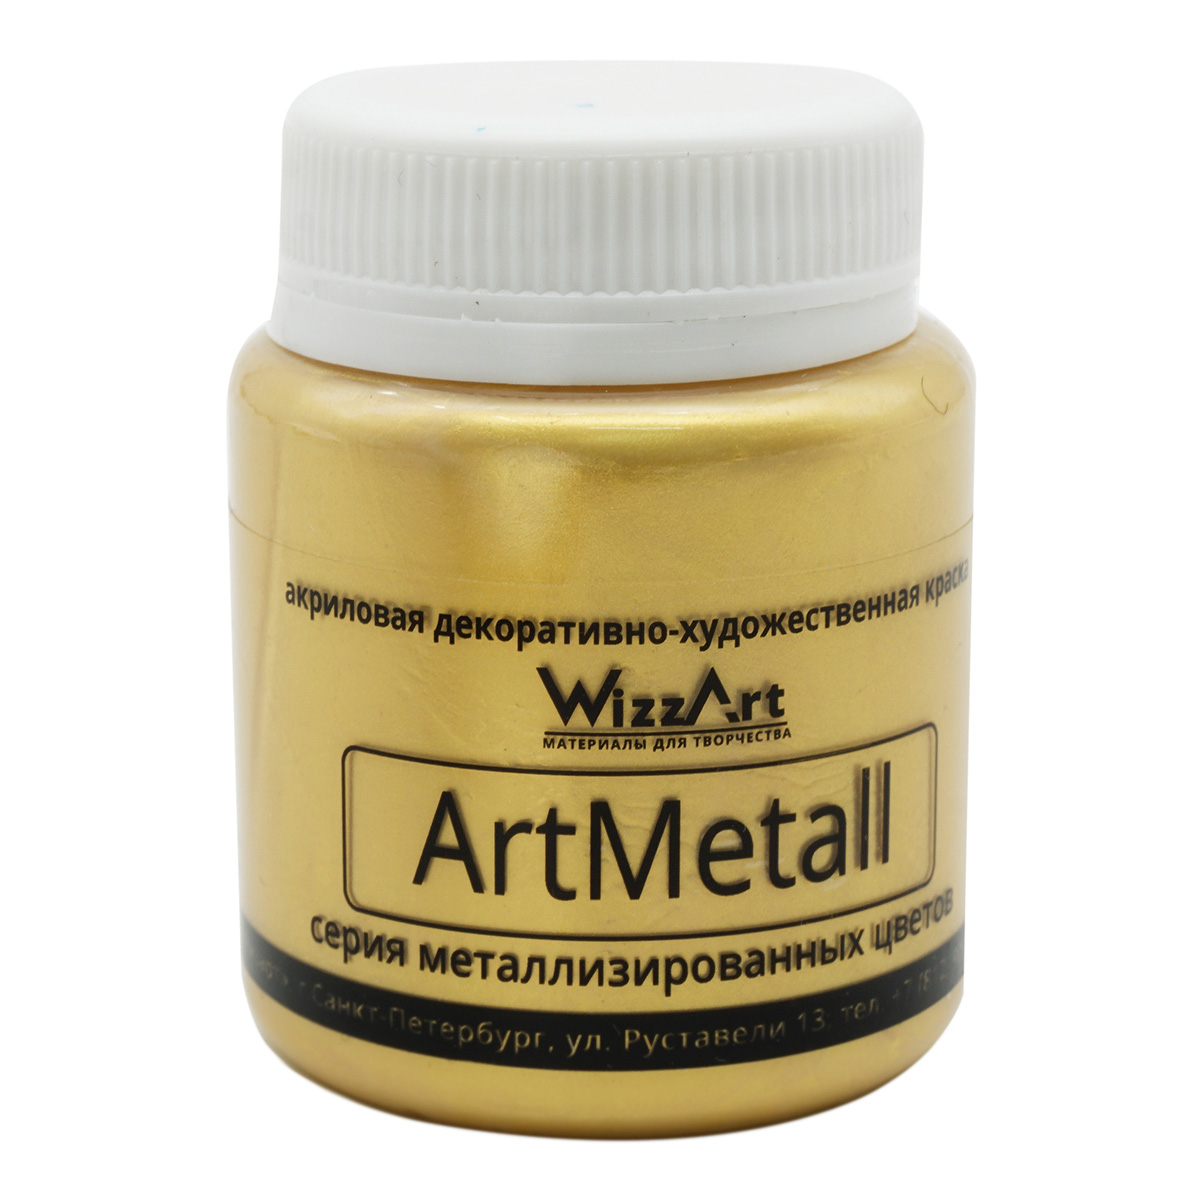 Краска ArtMetall, цвет золото 583, 80мл, Wizzart